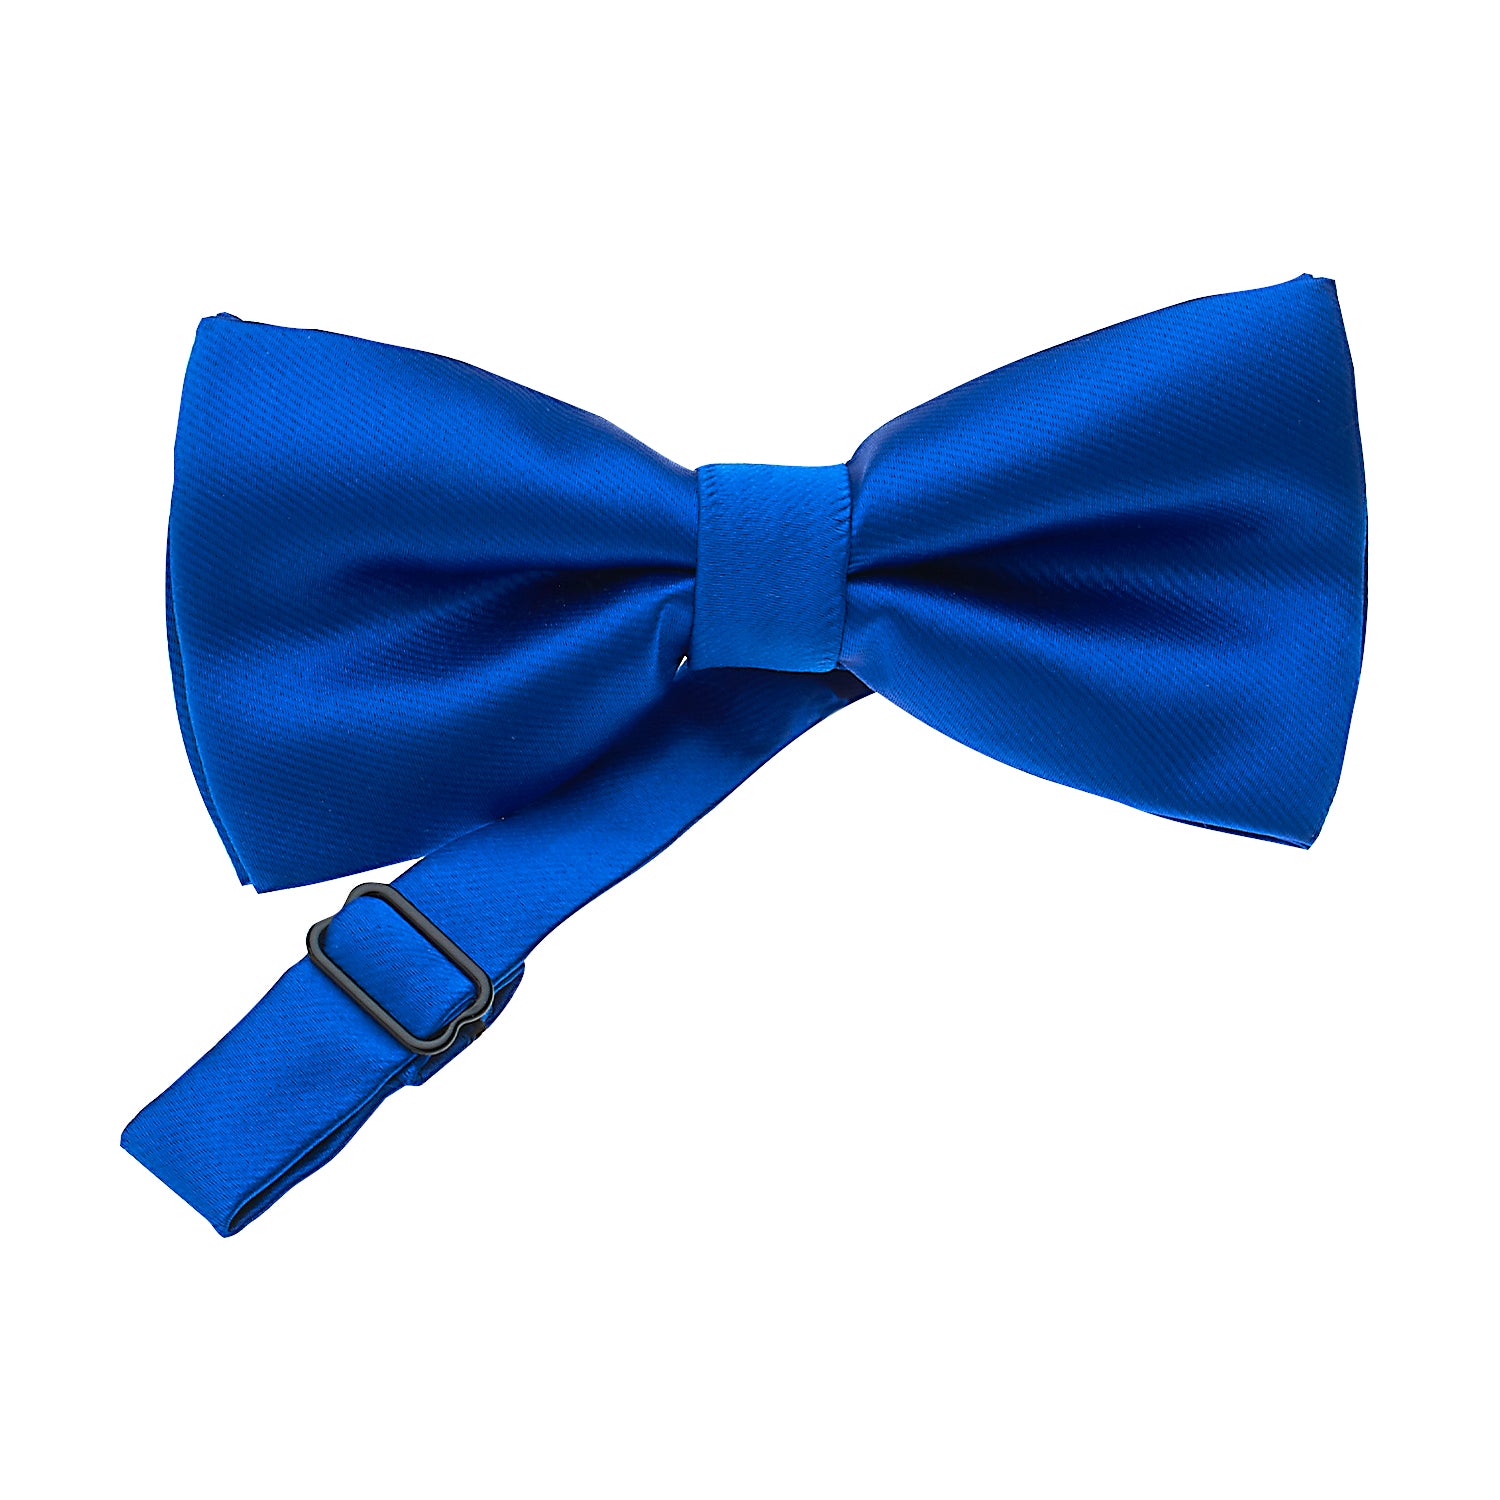 Royal Blue Bowtie-The Suit Spot-Wedding Suits-Wedding Tuxedos-Groomsmen Suits-Groomsmen Tuxedos-Slim Fit Suits-Slim Fit Tuxedos-Online wedding suits